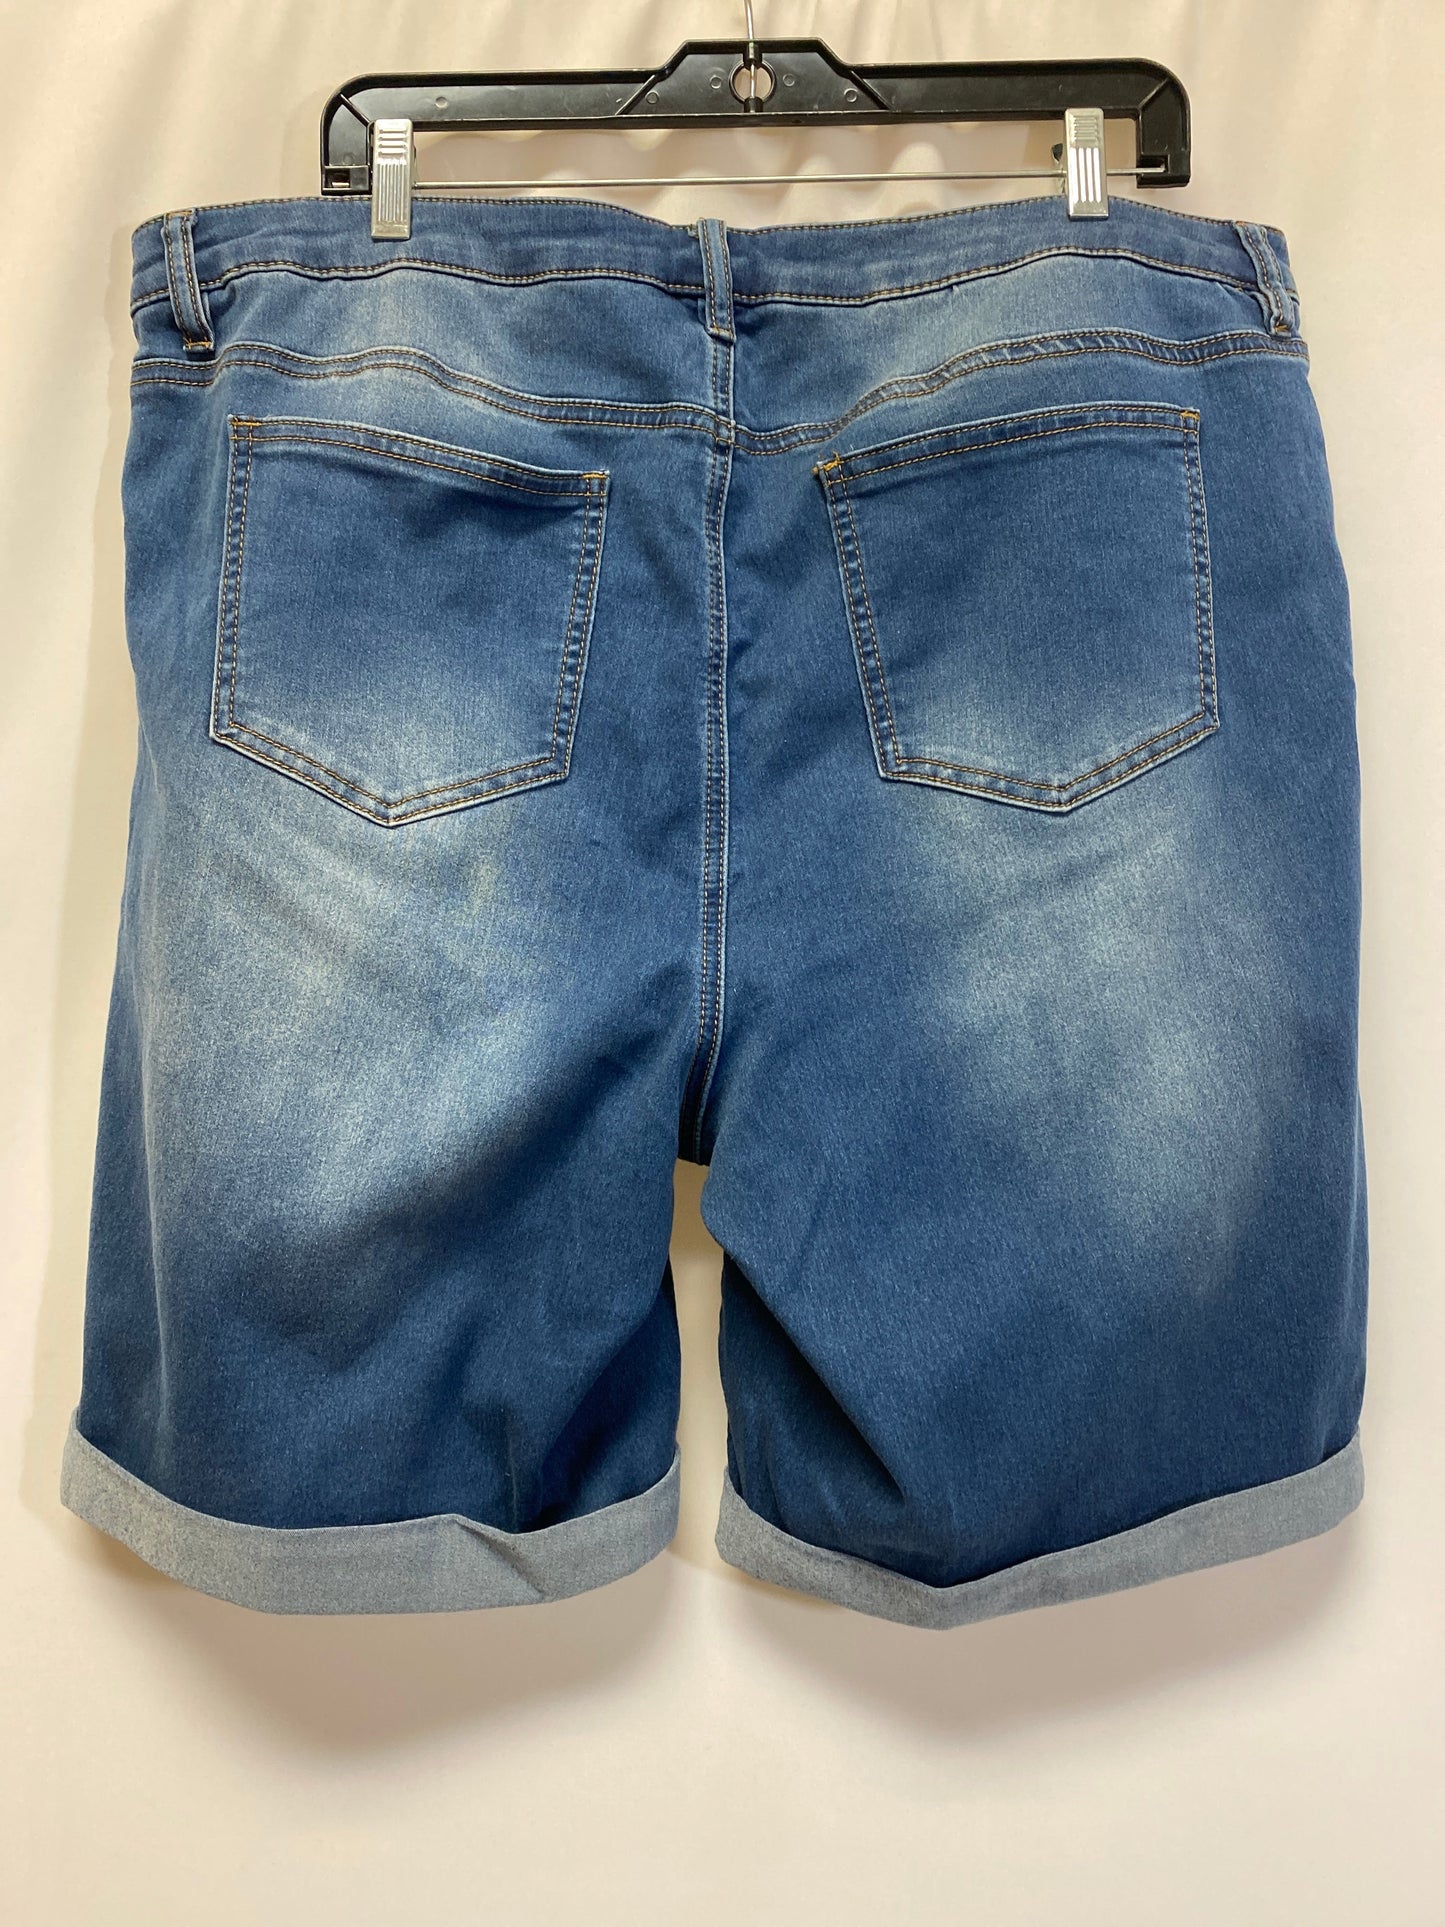 Blue Denim Shorts Clothes Mentor, Size 20